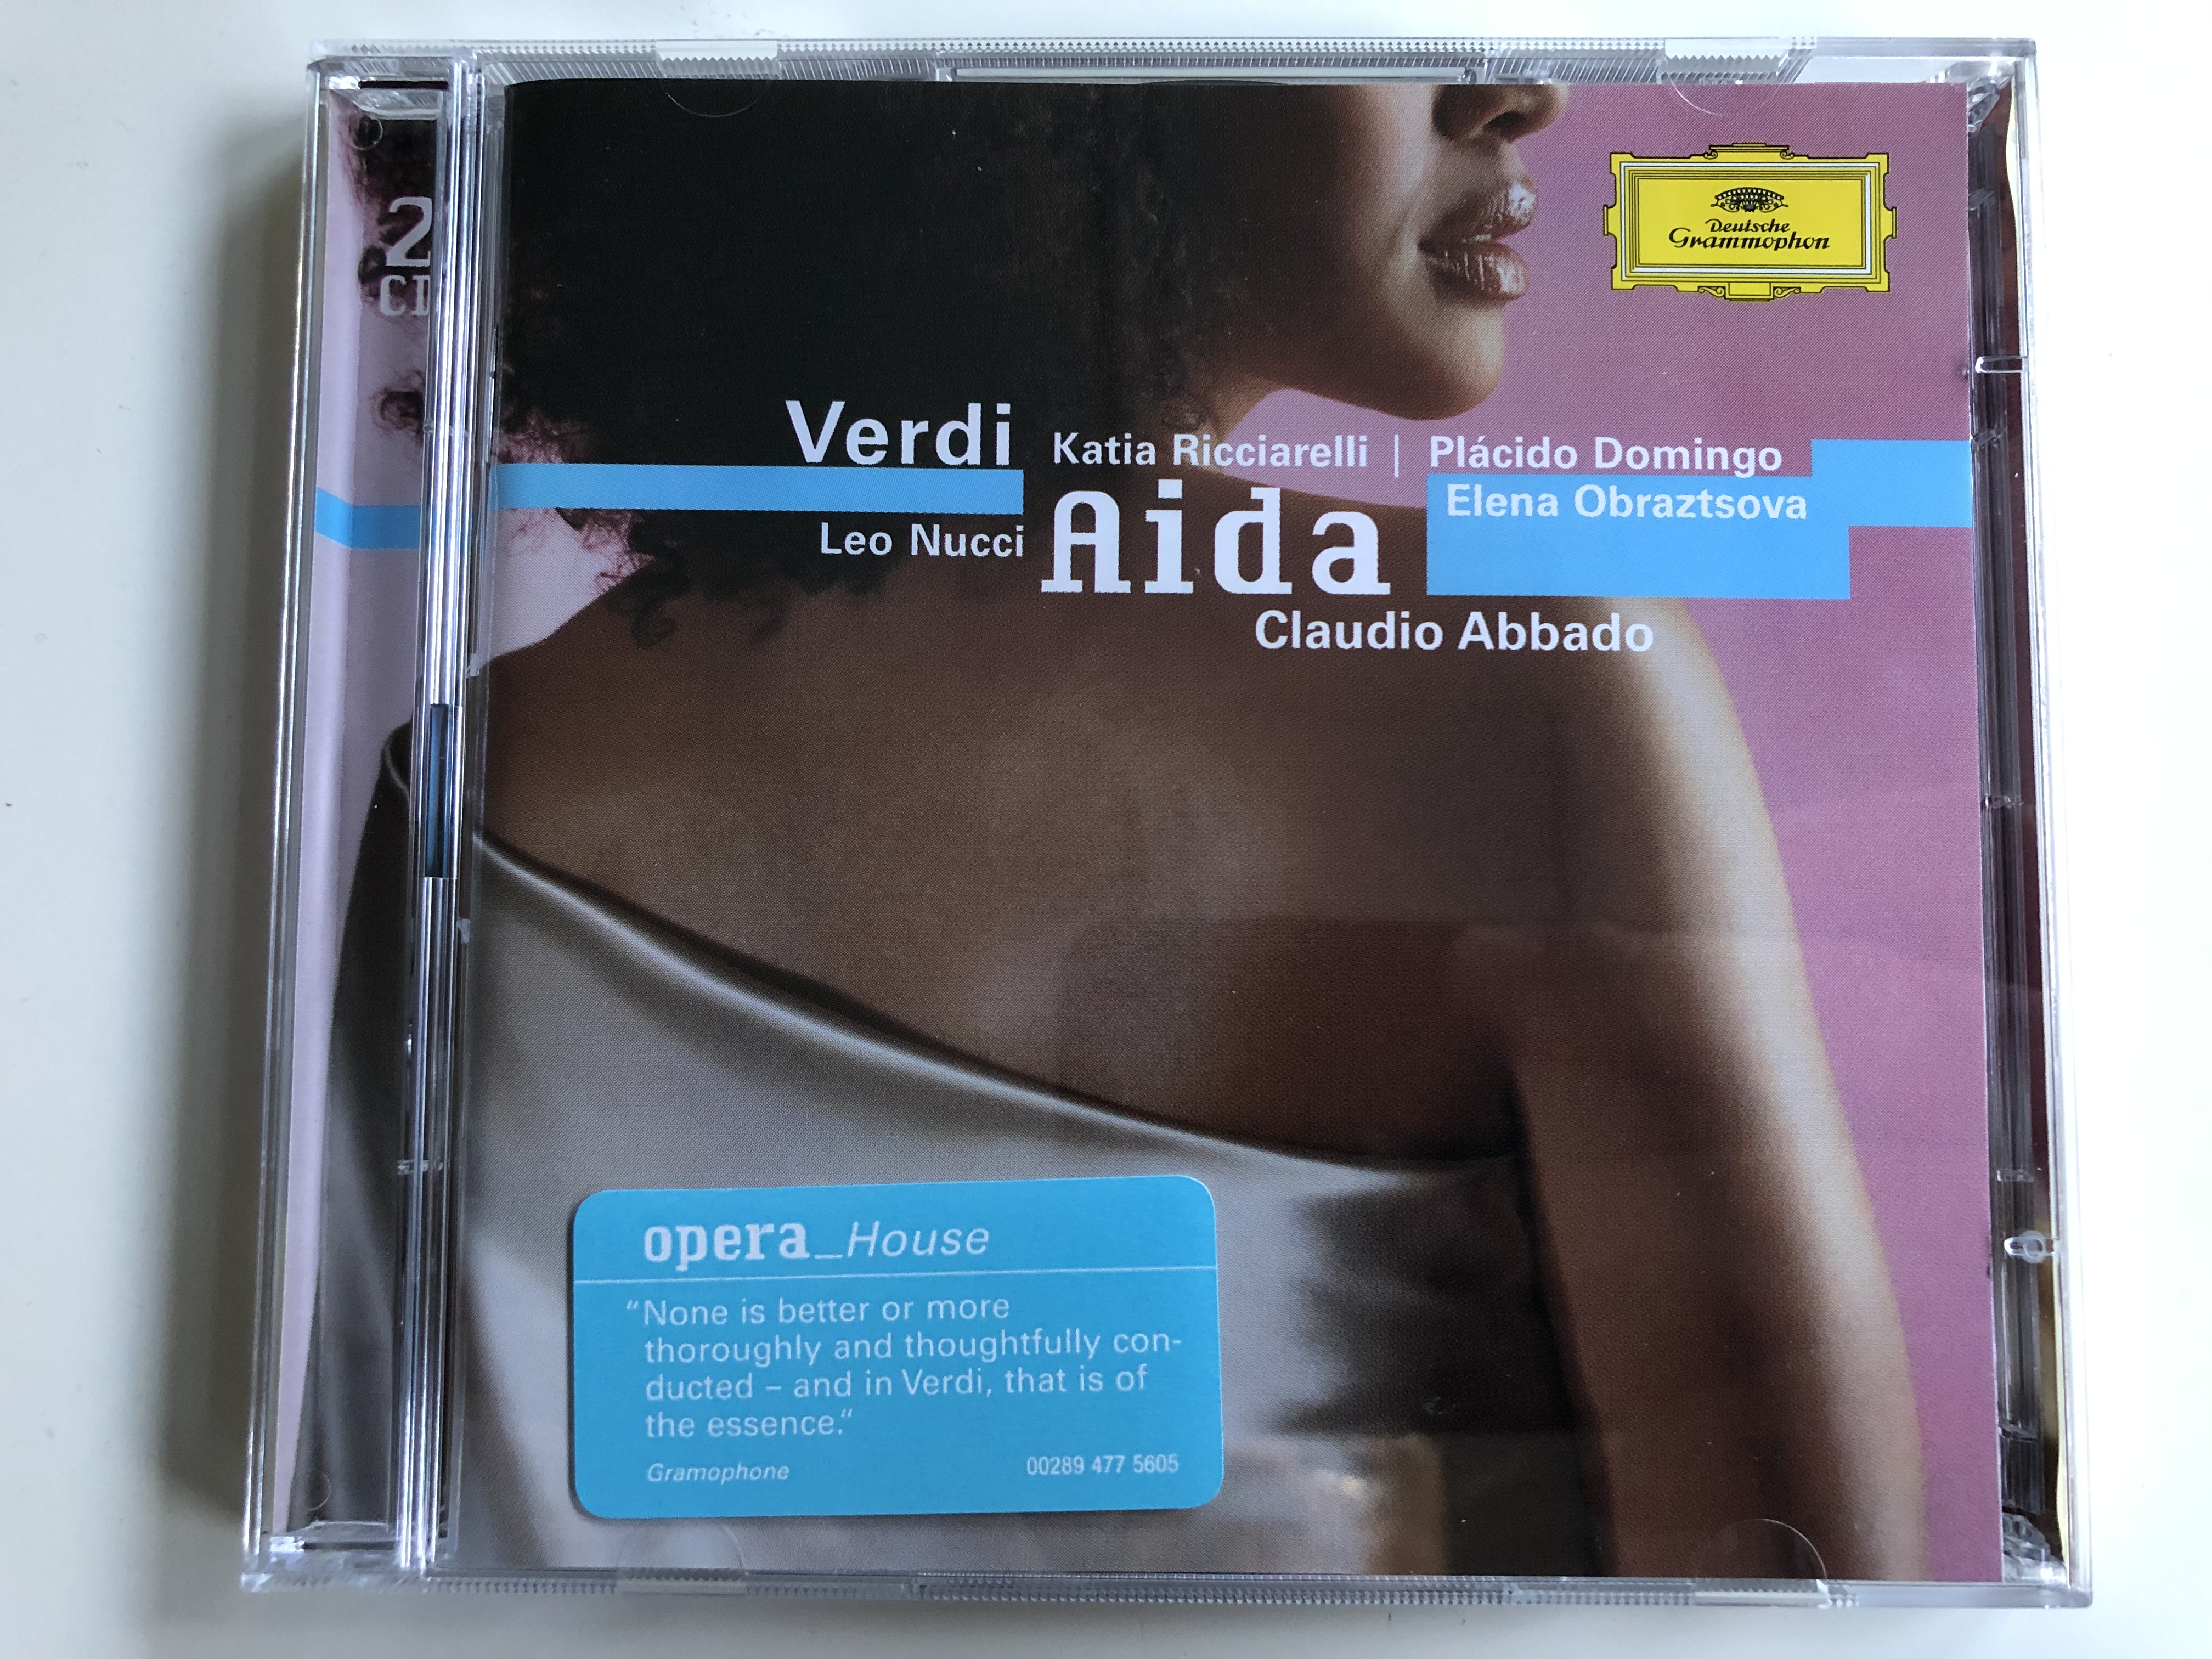 verdi-katia-ricciarelli-placido-domingo-leo-nucci-elena-obraztsova-claudio-abbado-aida-opera-house-deutsche-grammophon-2x-audio-cd-2005-00289-477-5605-1-.jpg